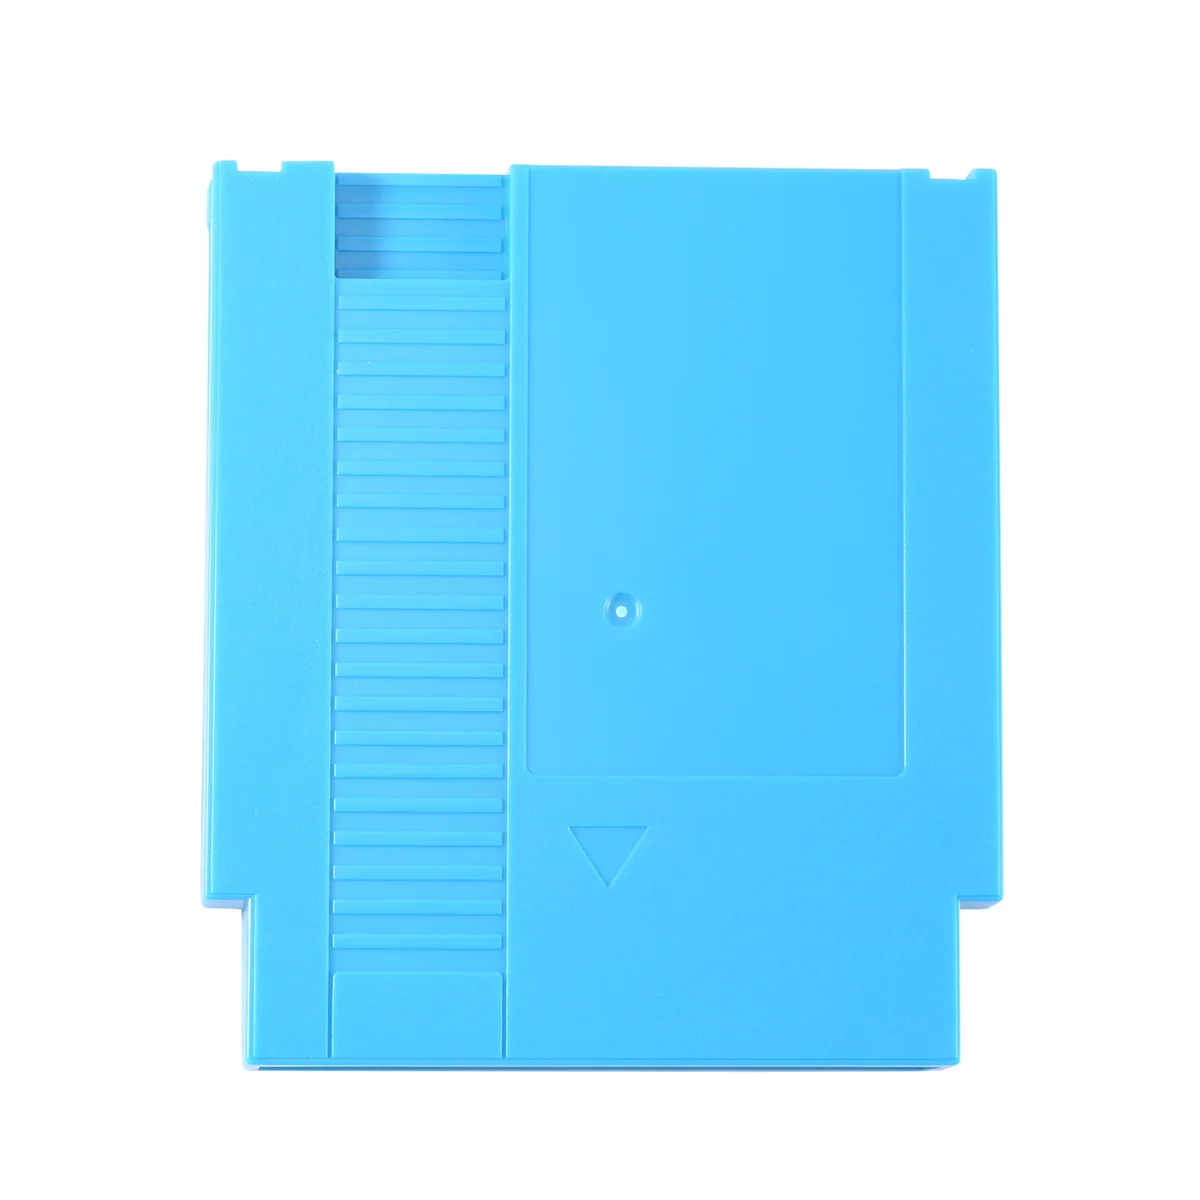 

Картридж игровой для консоли NES FOREVER DUO GAMES, 852 в 1 (405 + 447), всего 852 игр, 1024 Мбит, синий